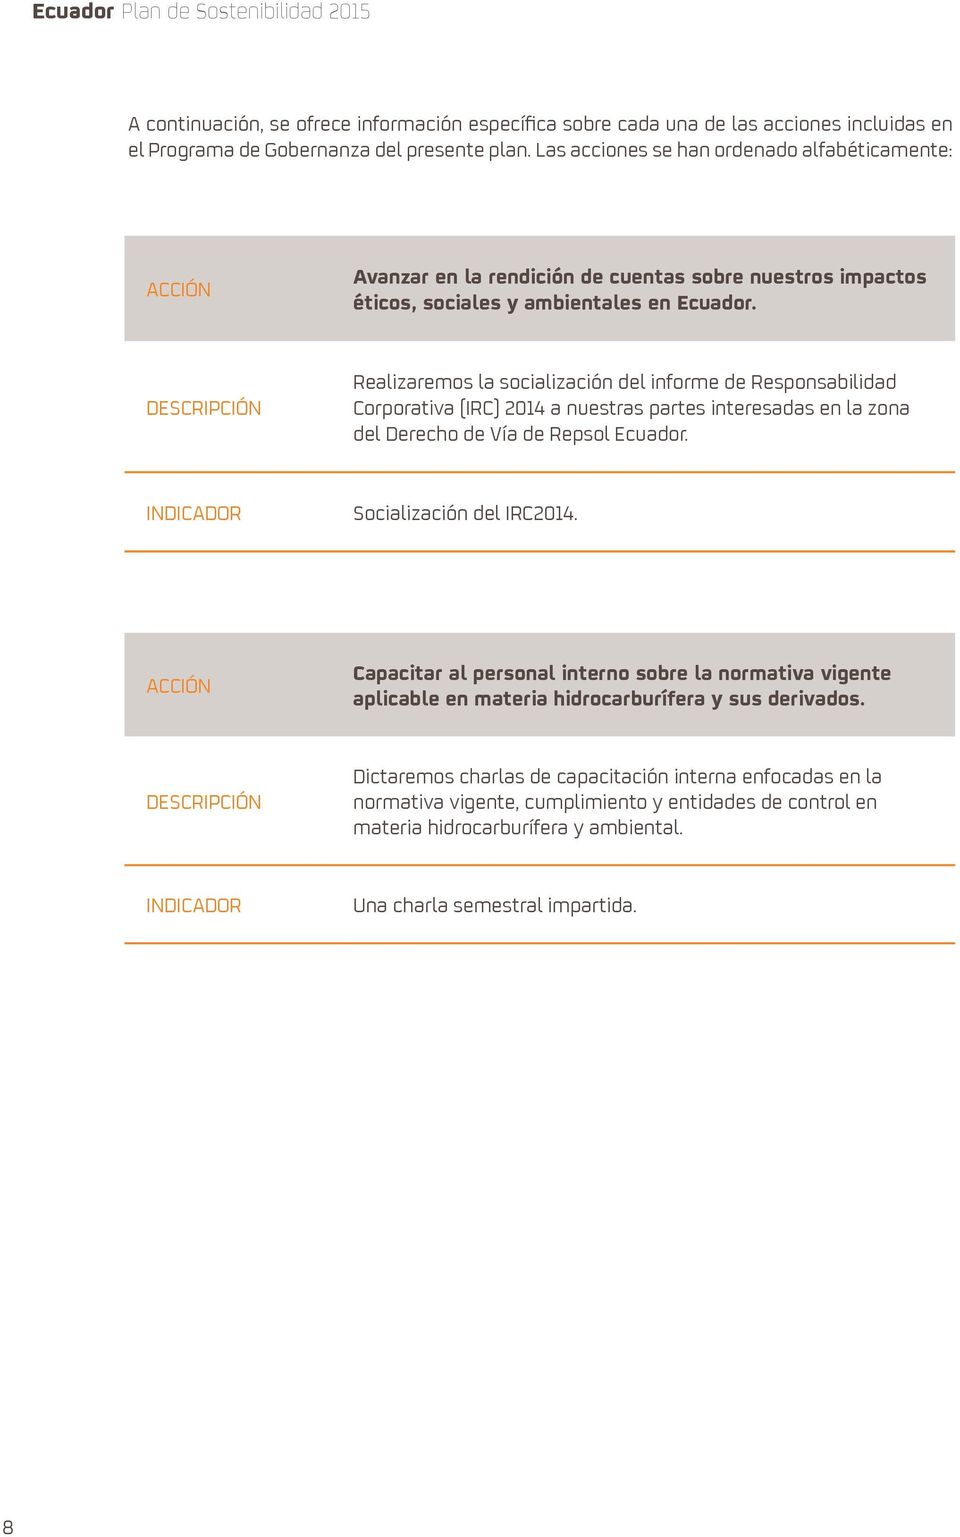 Realizaremos la socialización del informe de Responsabilidad Corporativa (IRC) 2014 a nuestras partes interesadas en la zona del Derecho de Vía de Repsol Ecuador. Socialización del IRC2014.